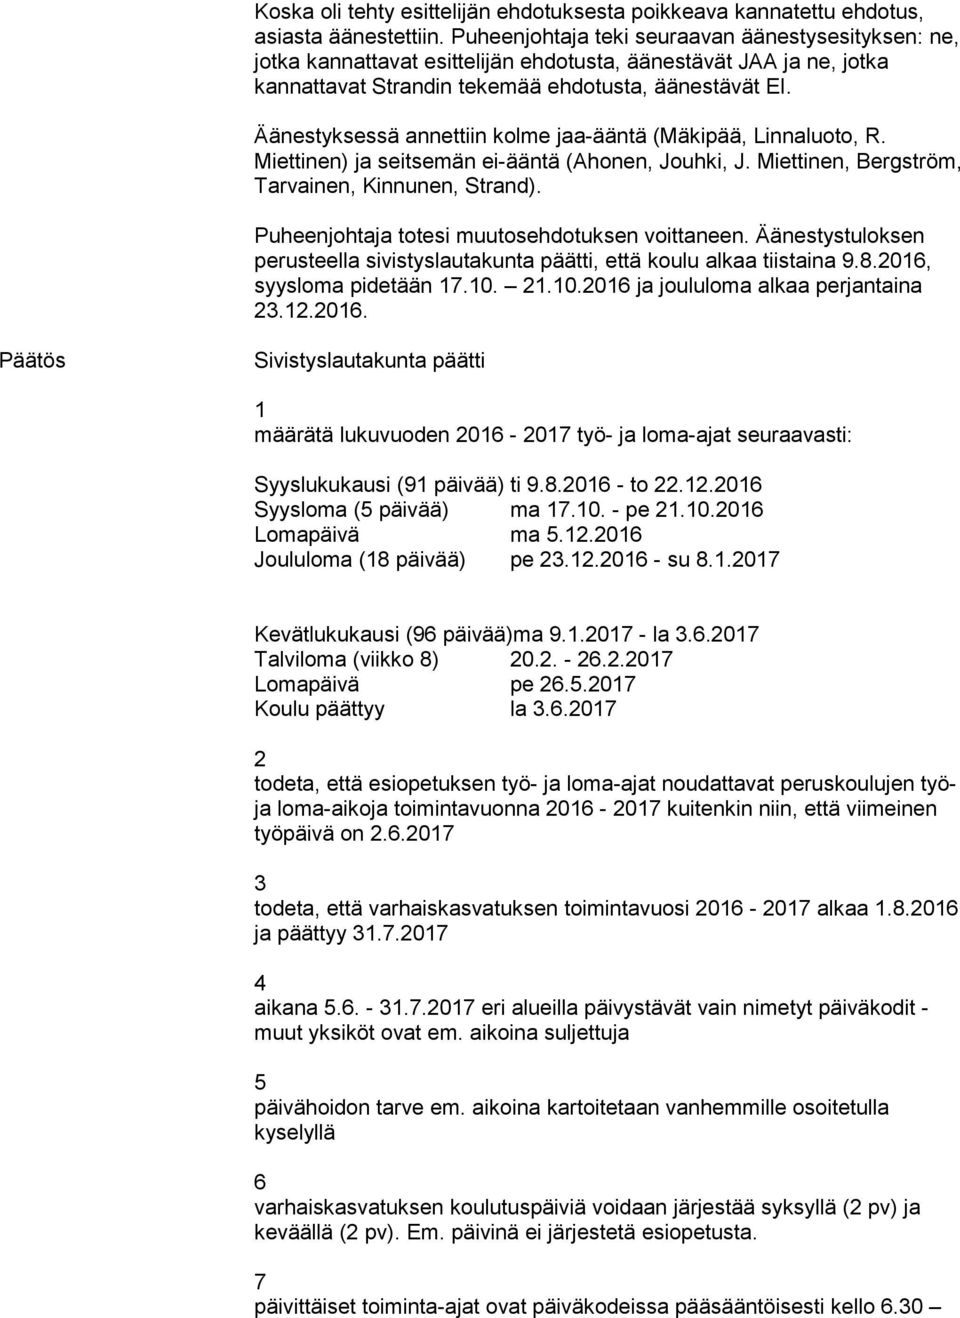 Äänestyksessä annettiin kolme jaa-ääntä (Mäkipää, Linnaluoto, R. Miettinen) ja seitsemän ei-ääntä (Ahonen, Jouhki, J. Miettinen, Bergström, Tarvainen, Kinnunen, Strand).